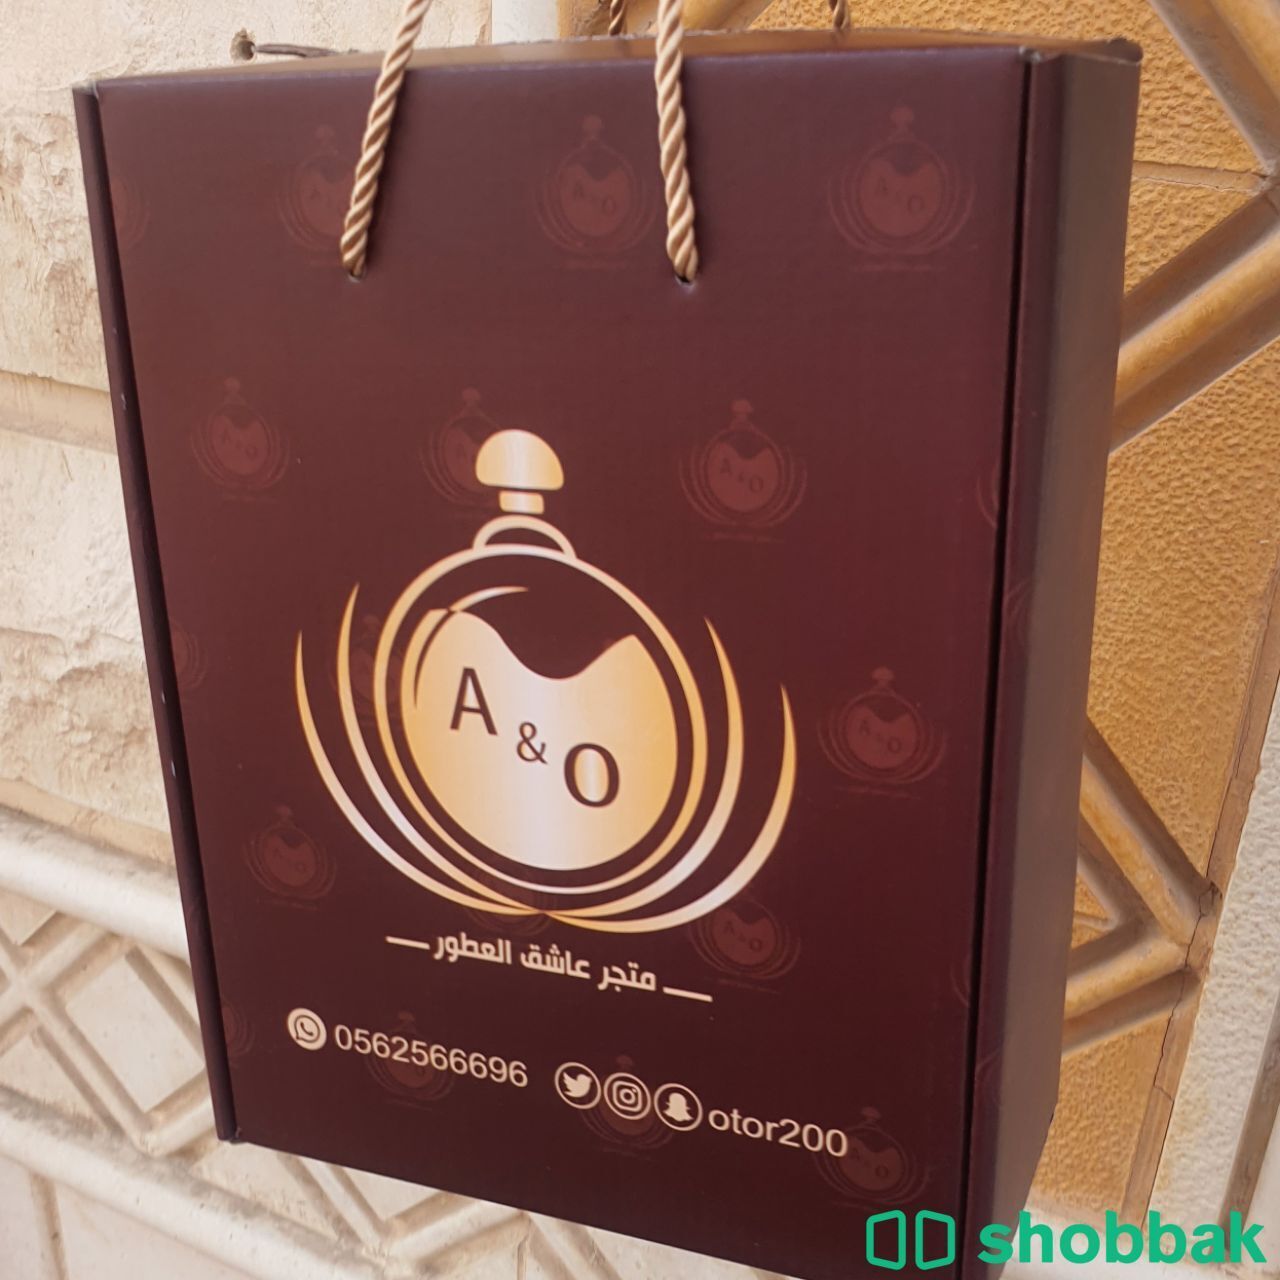 مطبوعات مطابع المملكة للدعاية والاعلان Shobbak Saudi Arabia